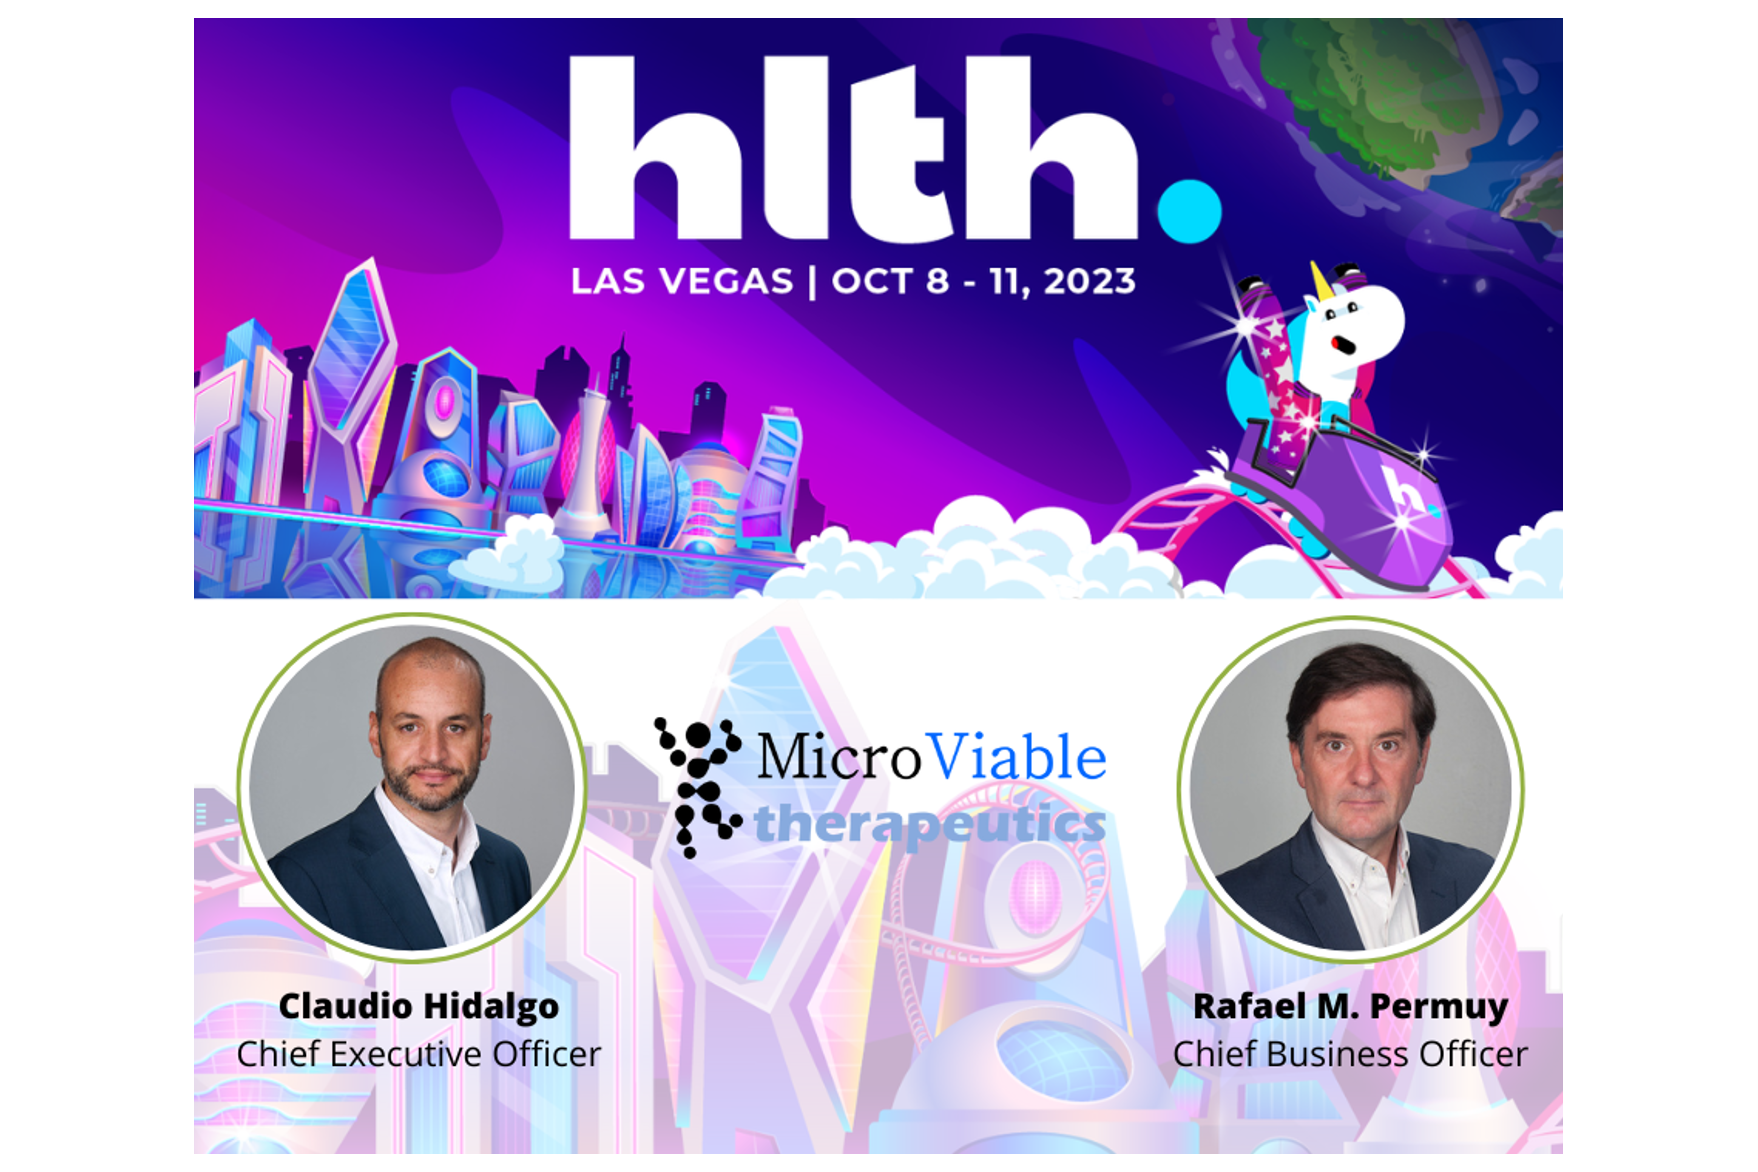 Claudio Hidalgo Cantabrana, CEO de Microviable, y Rafael M. Permuy, CBO en la empresa, asistirán al evento HLTH 2023 en las Vegas del 8 al 11 de octubre.